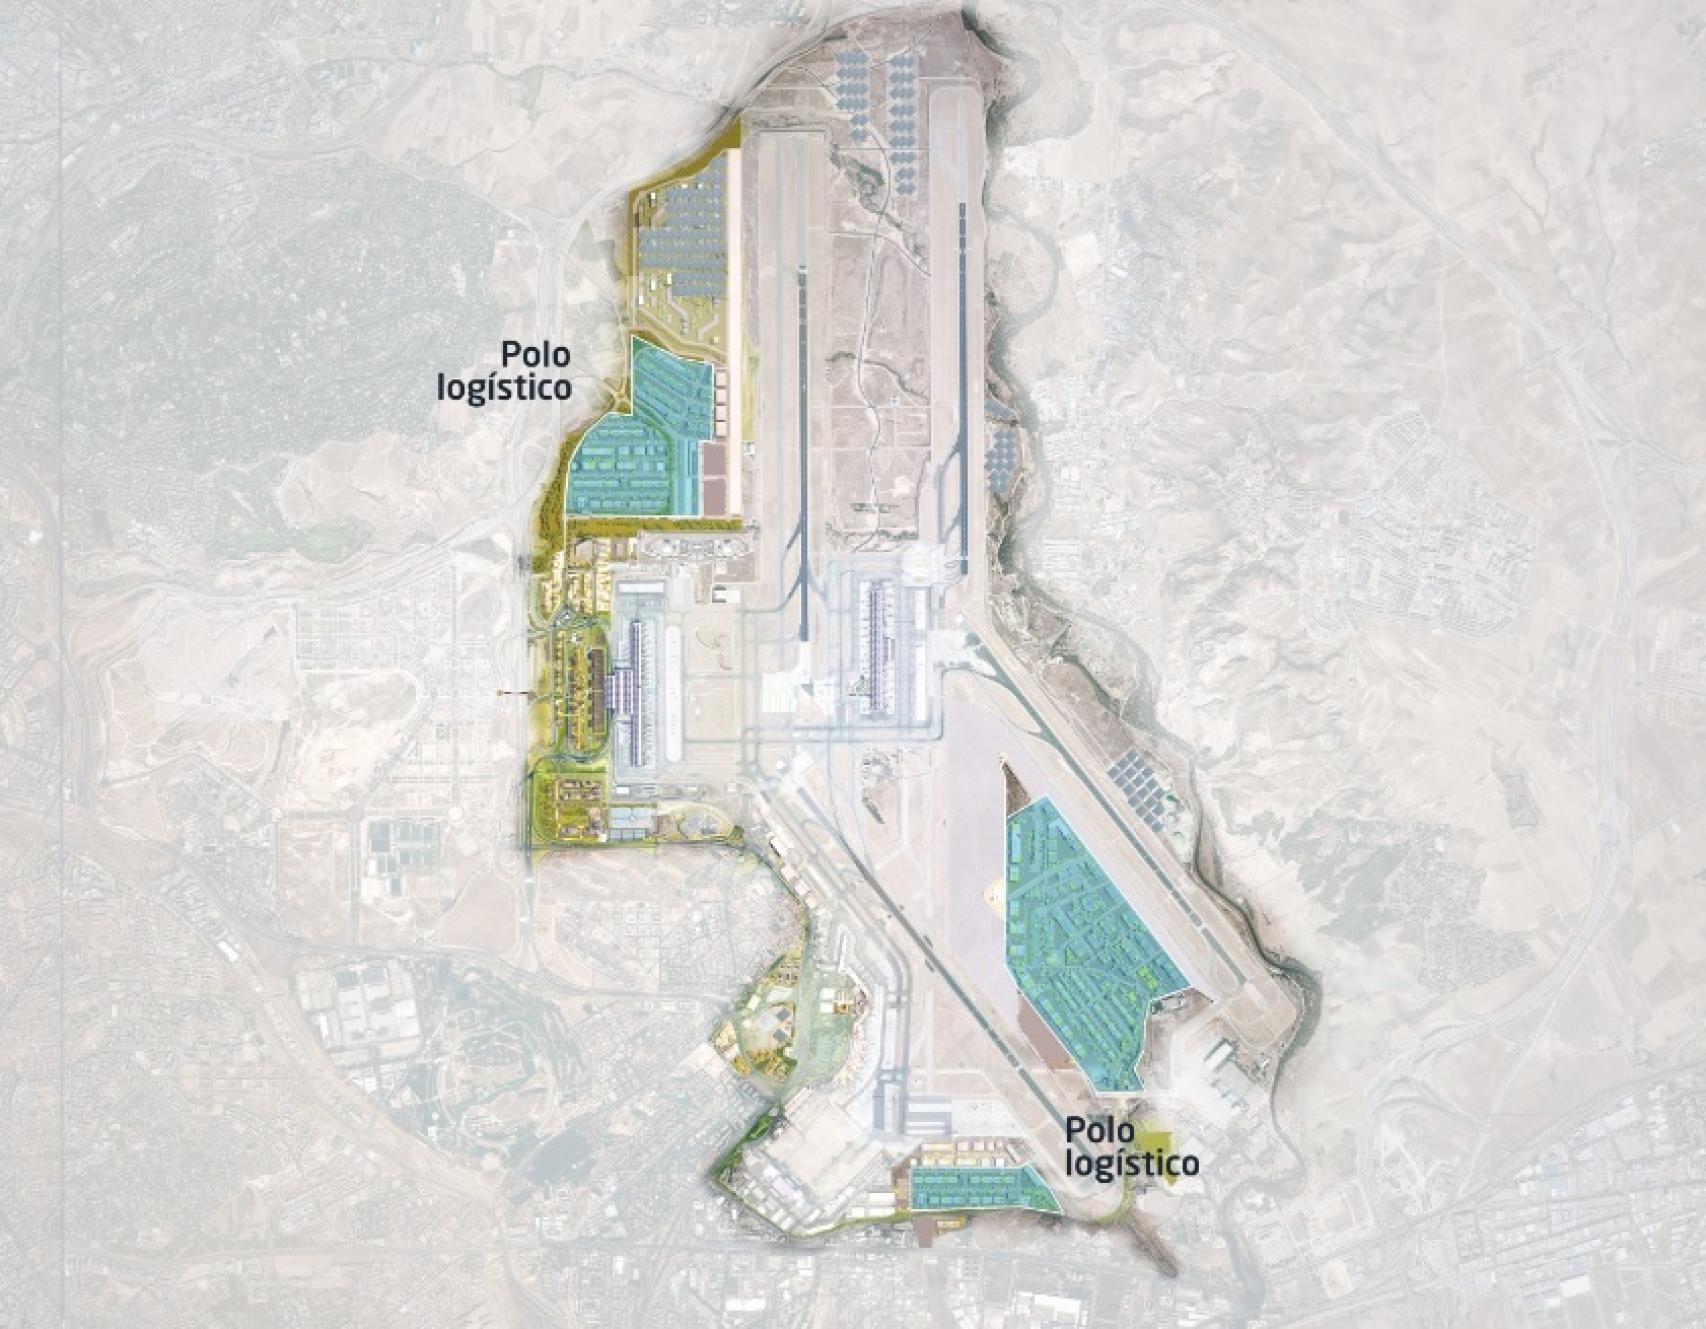 Plano del desarrollo del polo logístico de Barajas. Fuente: Aena.